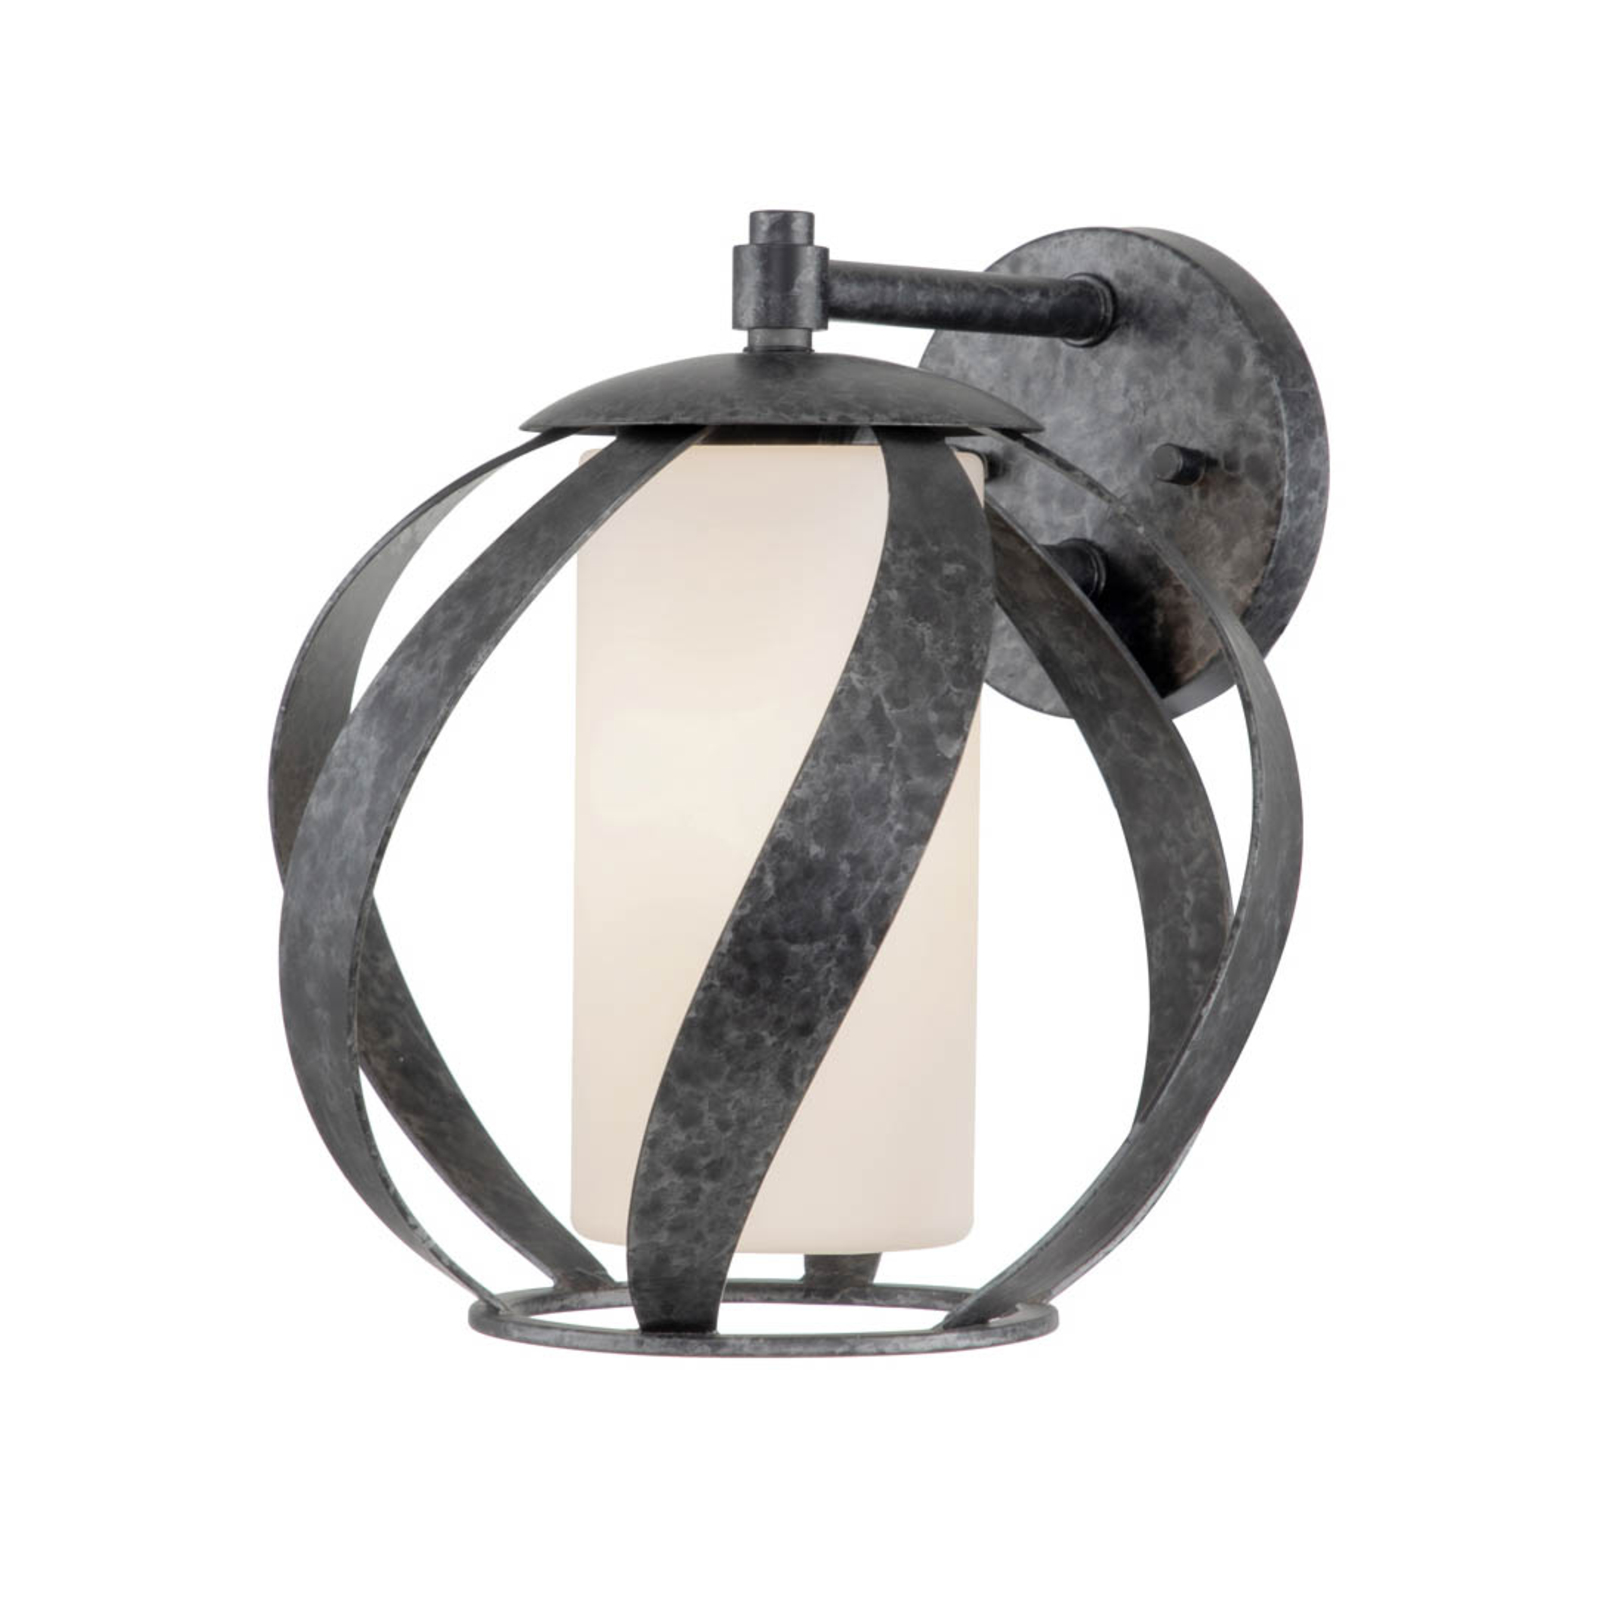 Blacksmith-seinälamppu musta/valkoinen, 1 lamppu